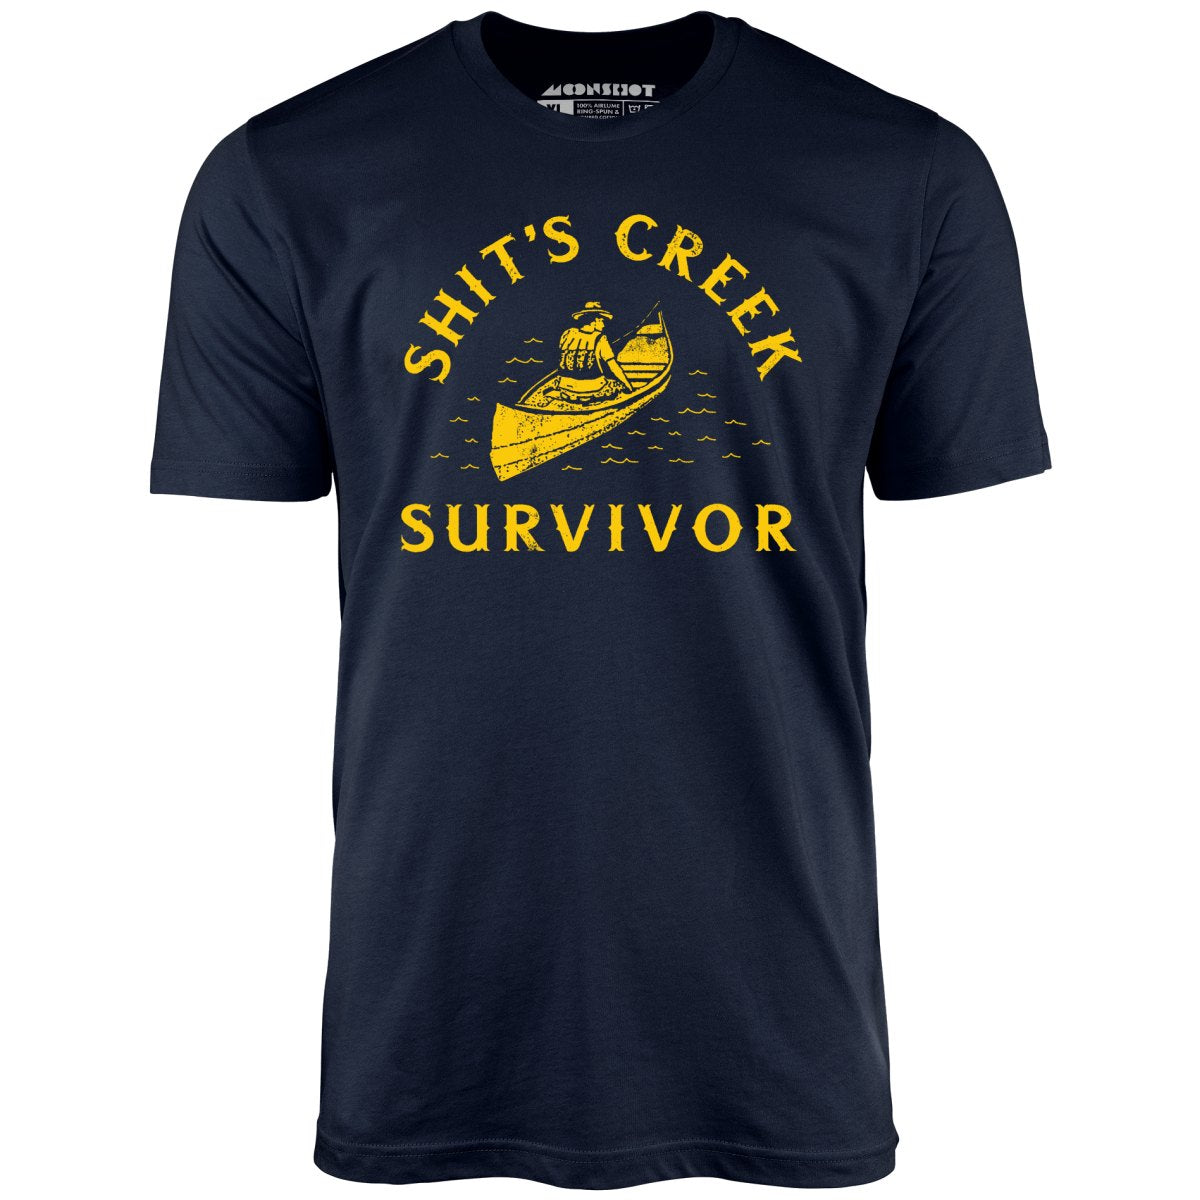 Shit's Creek Survivor - Unisex T-Shirt